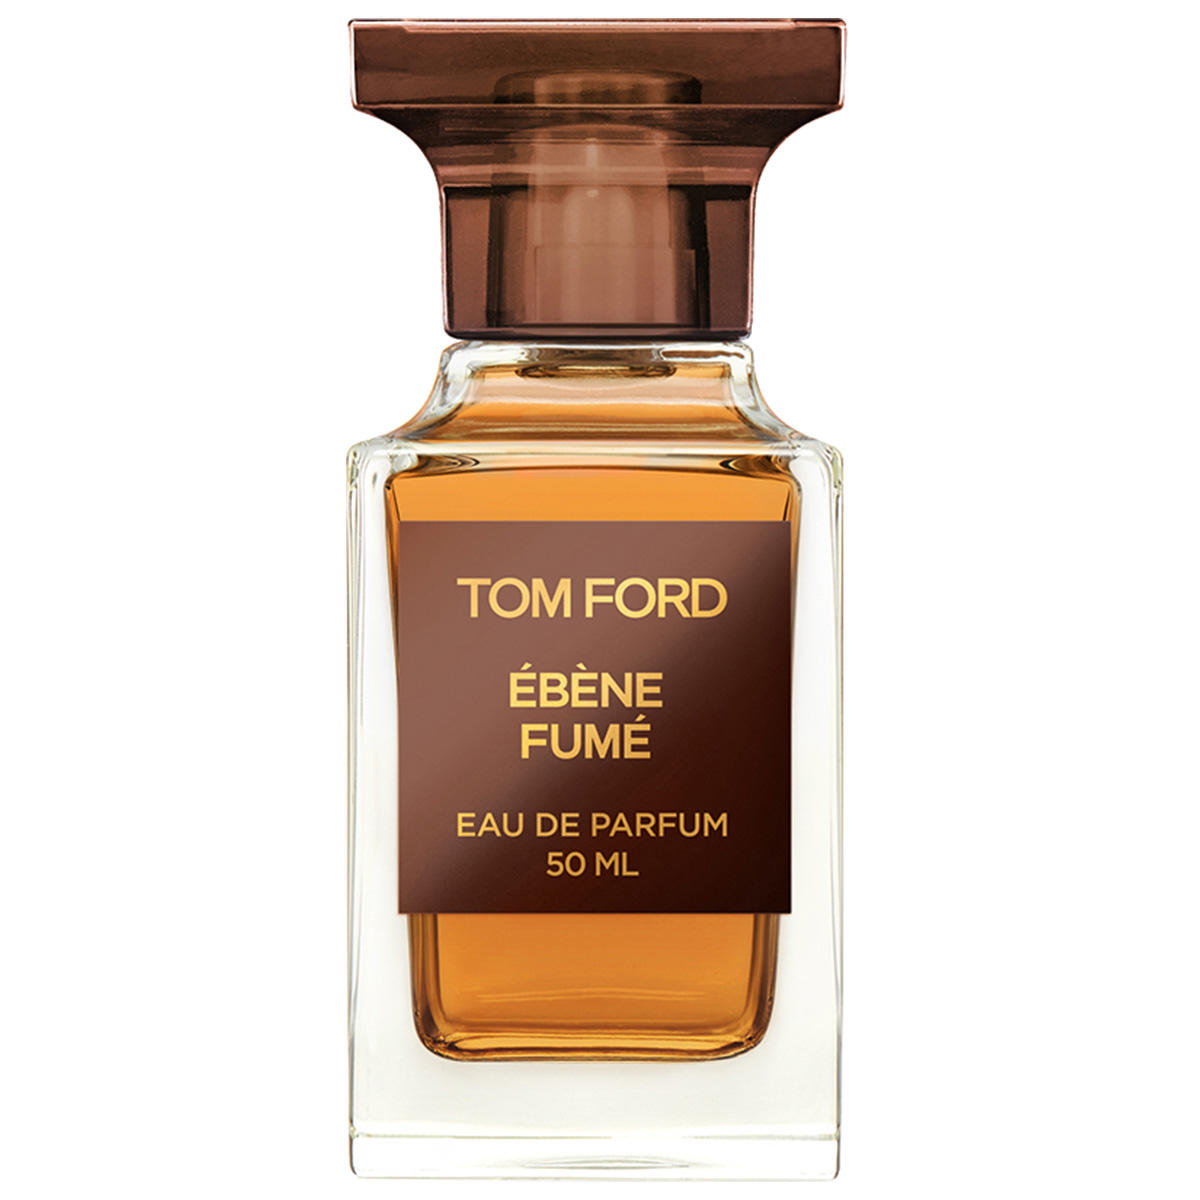 Tom Ford Ébène Fumé Eau de Parfum 50 ml - 1